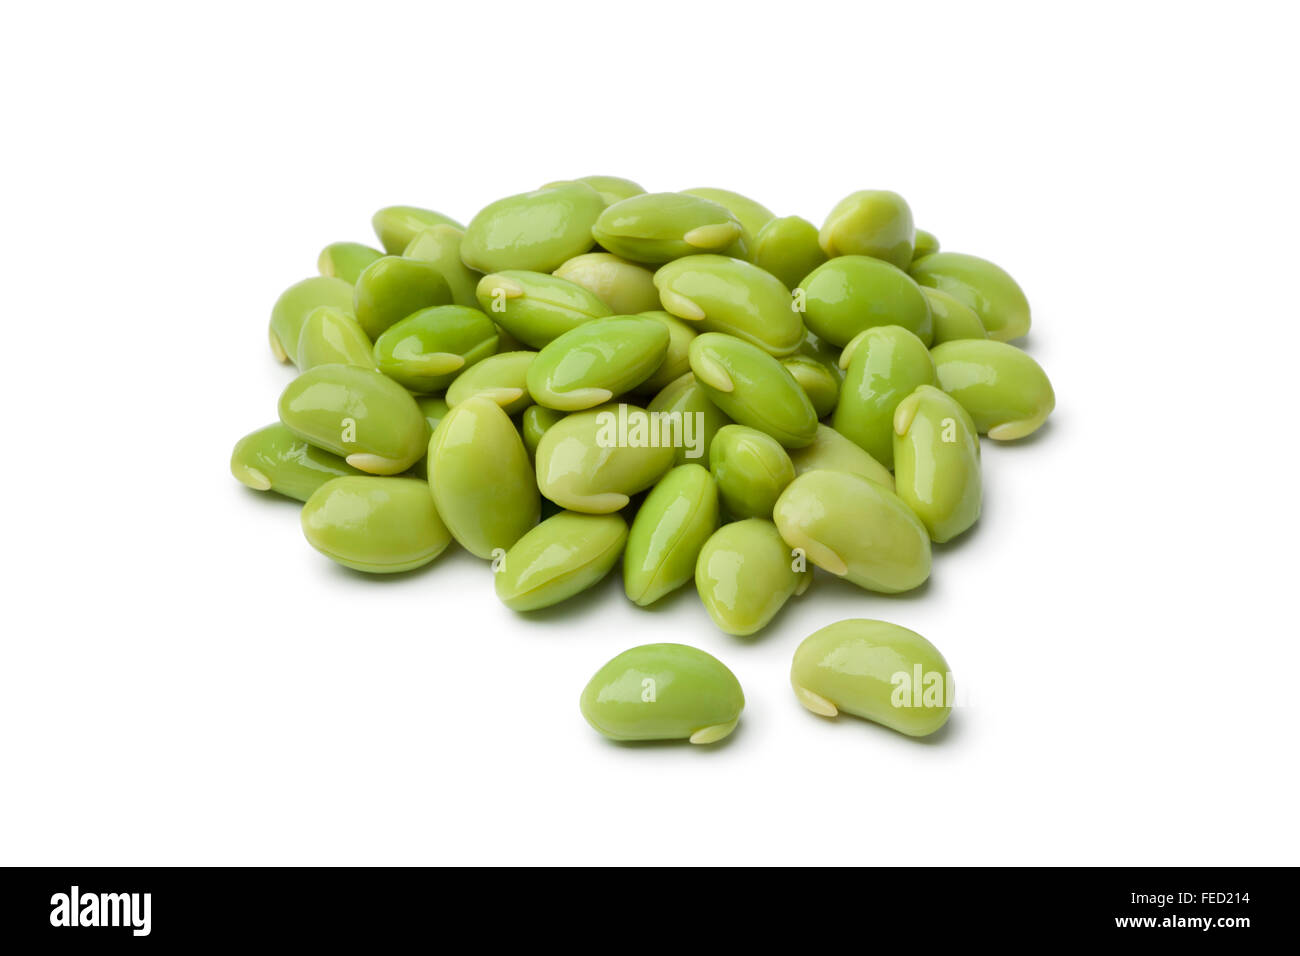 Fresh peeled soybeans  on white background Stock Photo